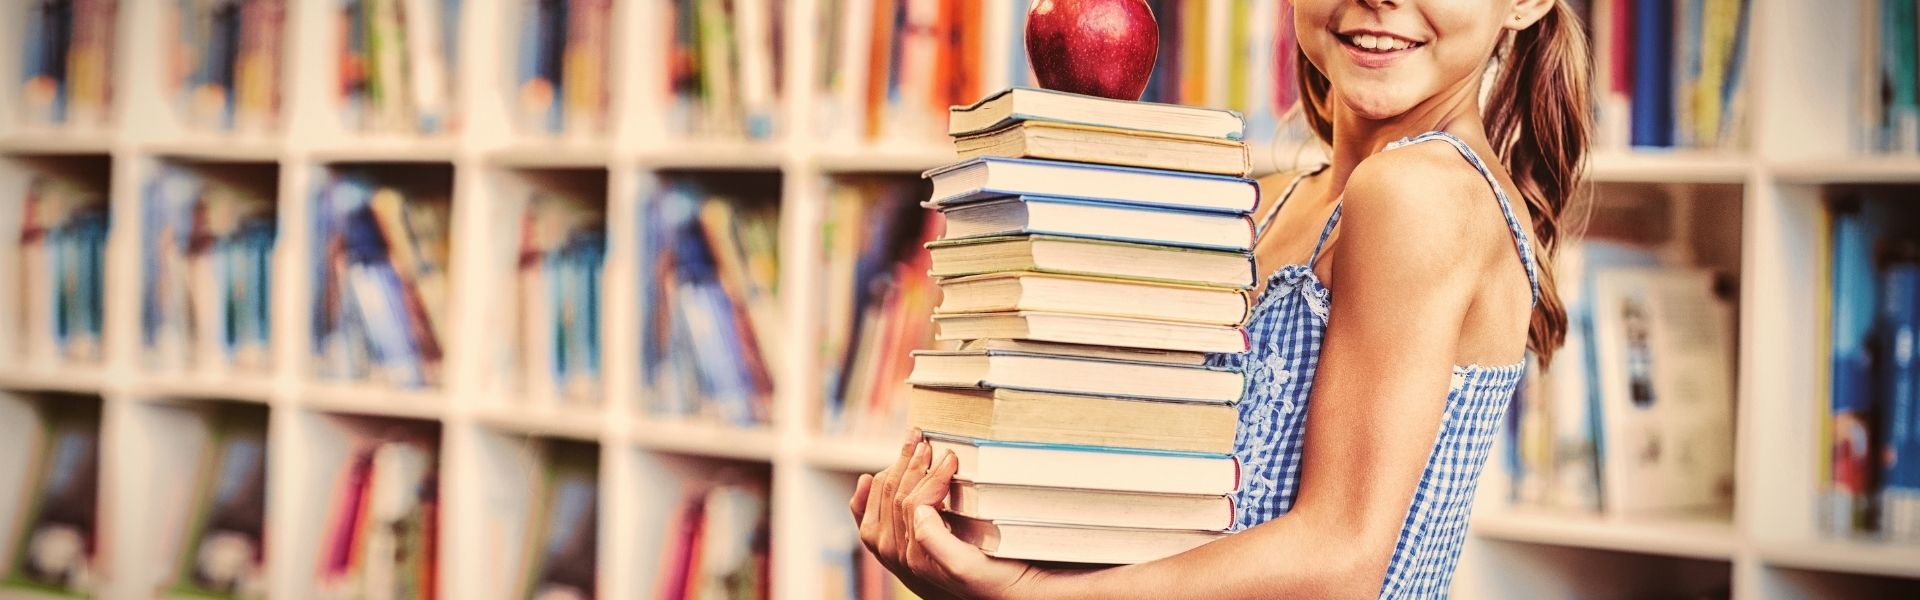 Schulmädchen hält Stapel von Büchern in der Bibliothek